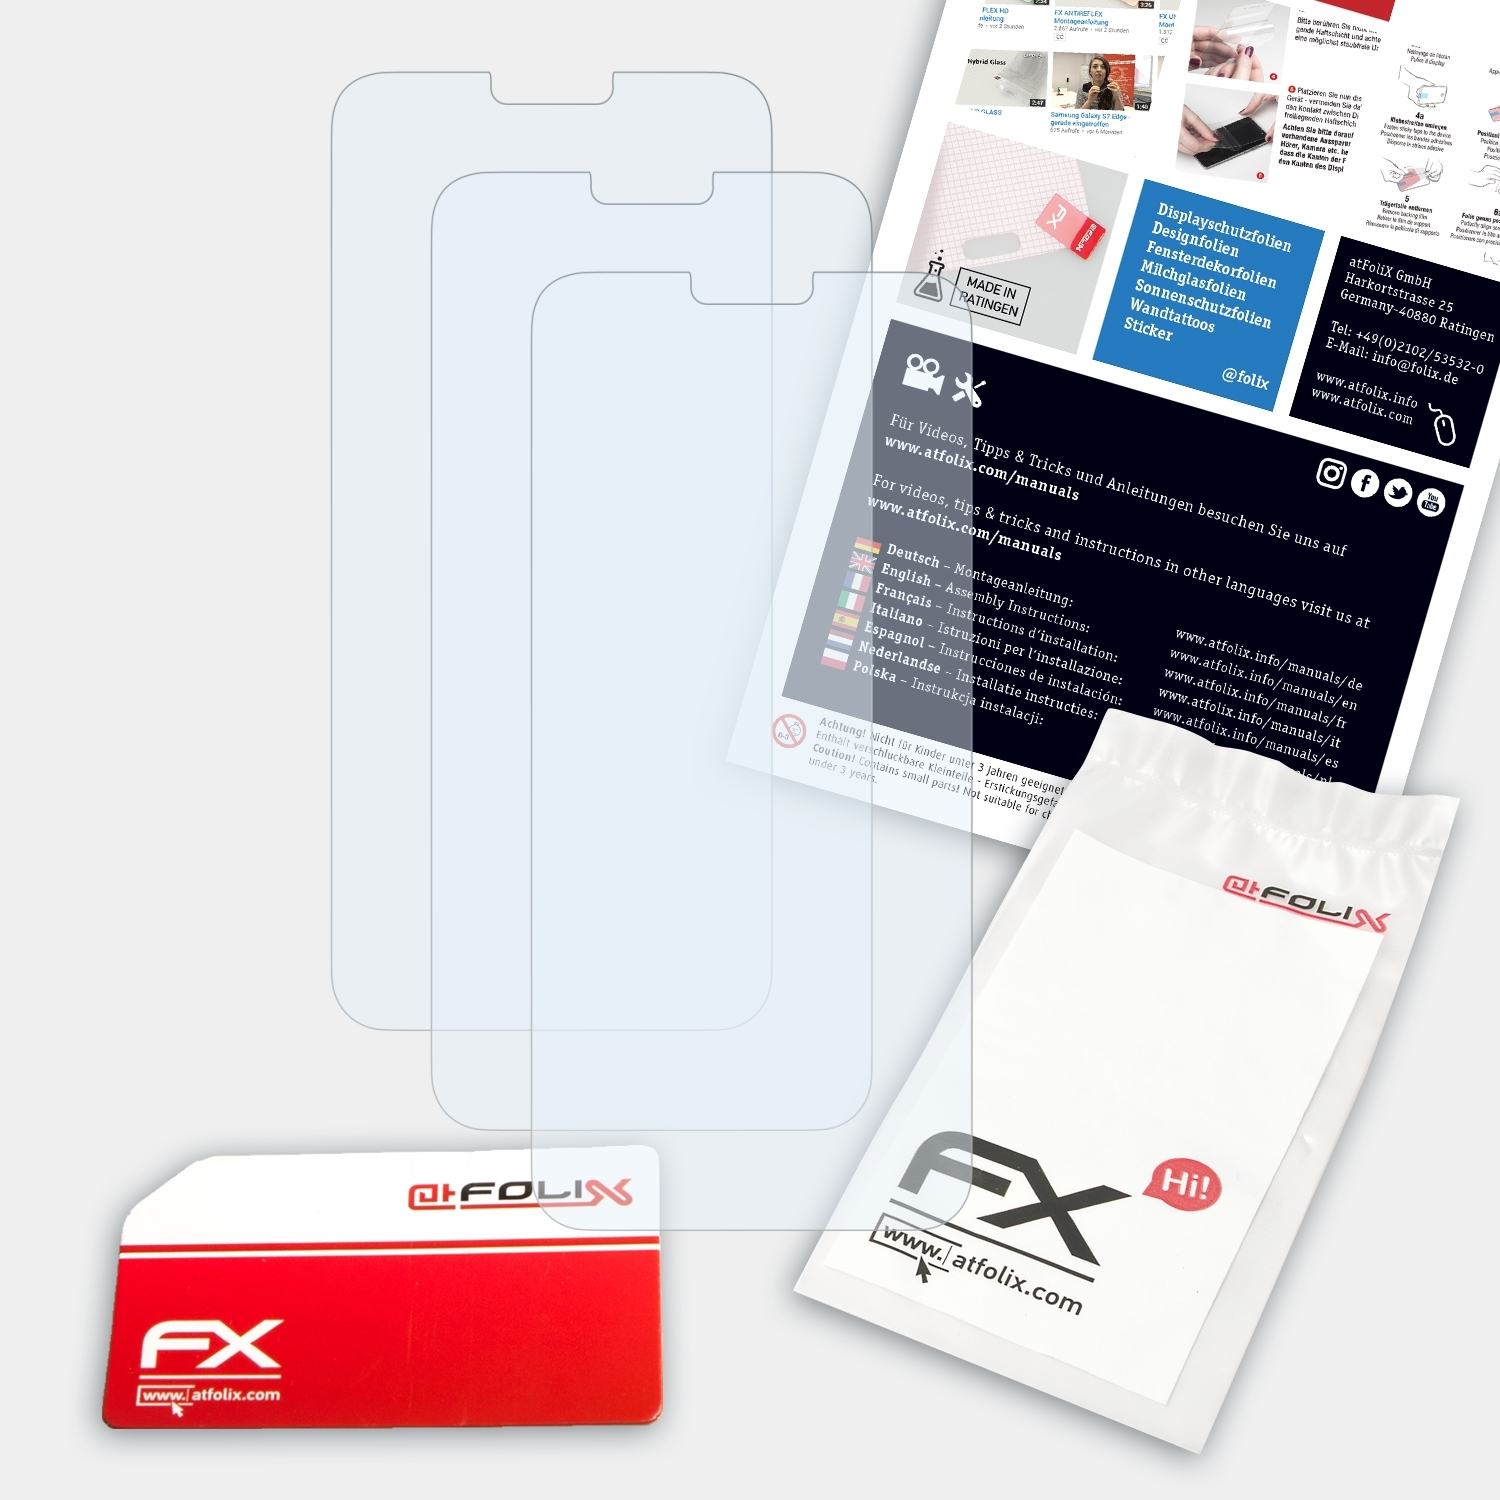 FX-Clear ATFOLIX Doogee 3x Displayschutz(für Y7)